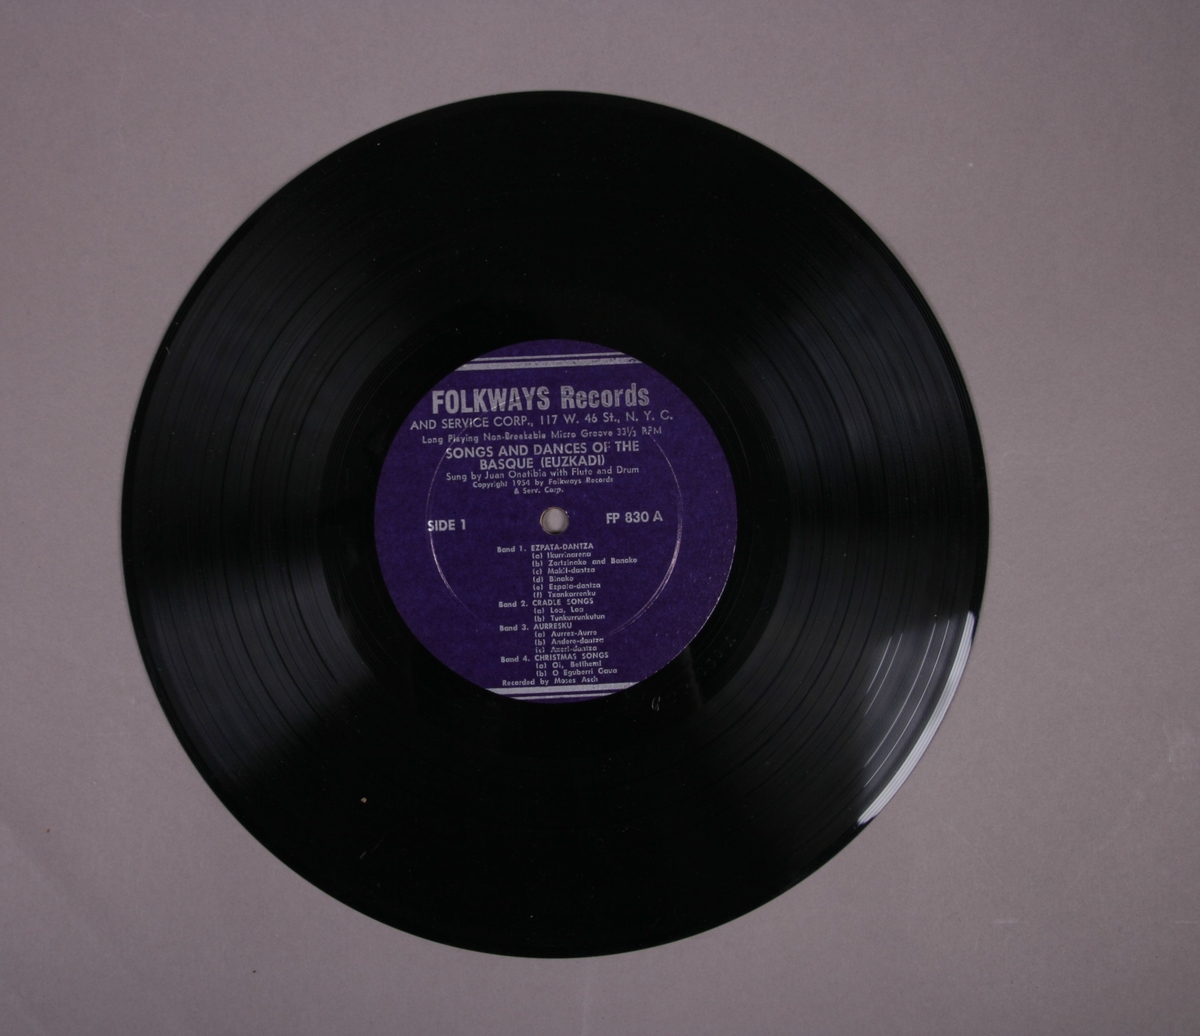 Grammofonplate i svart vinyl og plateomslag i tykk papp. Inneholder et hefte med sangtekster og beskrivelse av musikken. Plata ligger i en plastlomme.